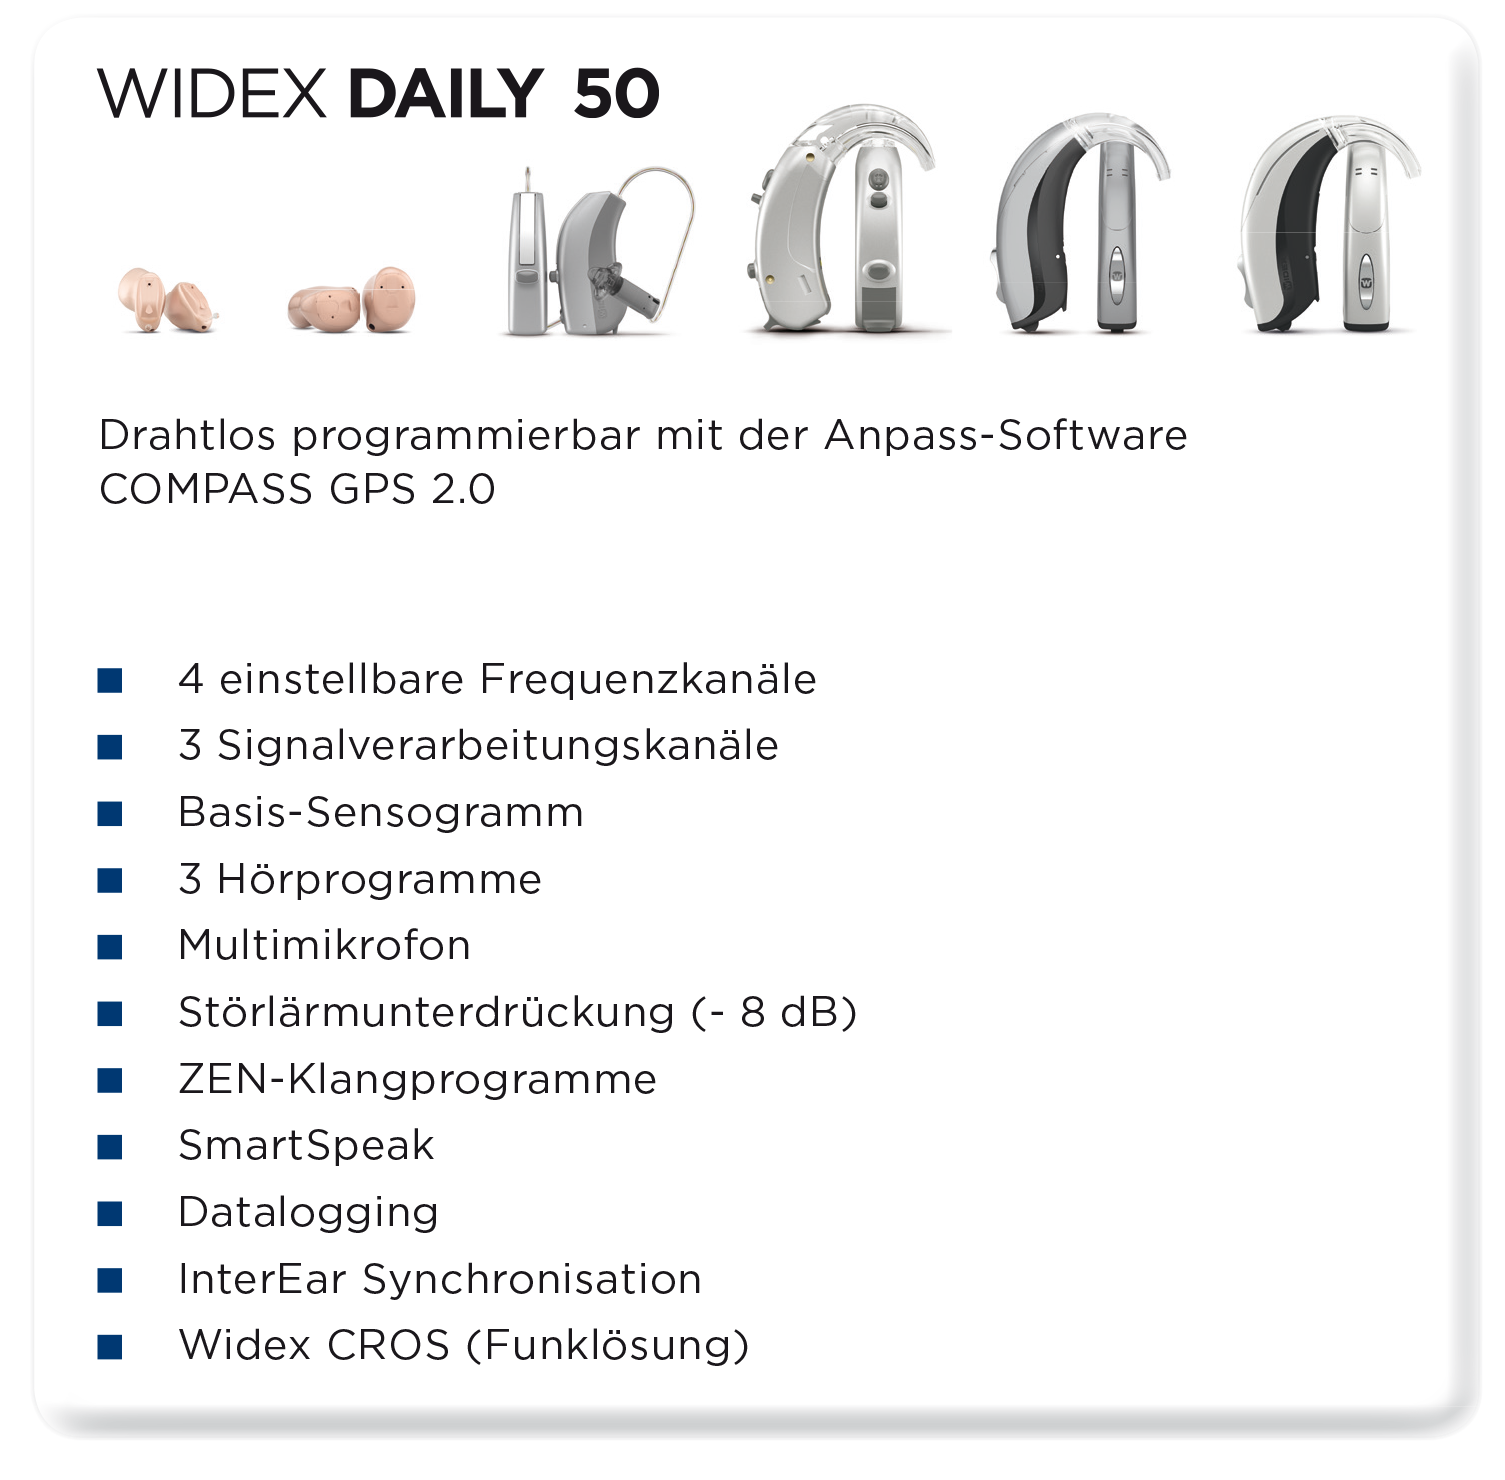 Das Daily 50 von Widex im Überblick